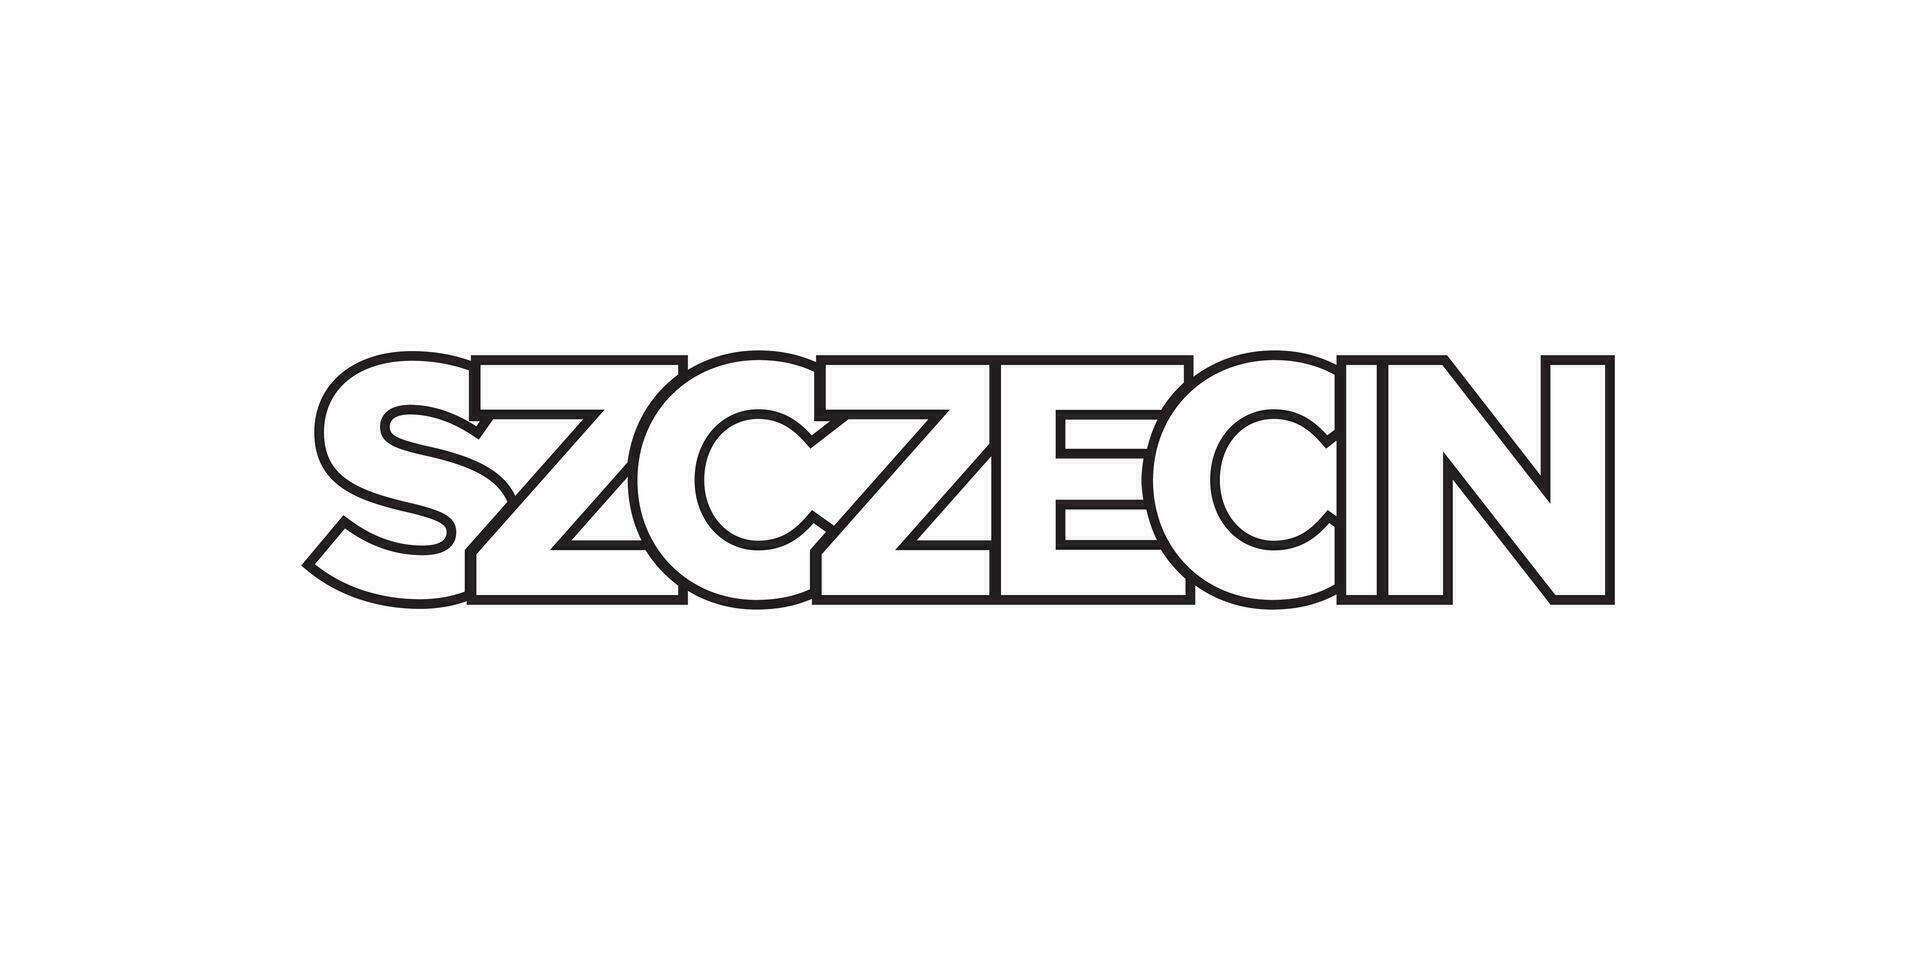 szczecin en el Polonia emblema. el diseño caracteristicas un geométrico estilo, vector ilustración con negrita tipografía en un moderno fuente. el gráfico eslogan letras.